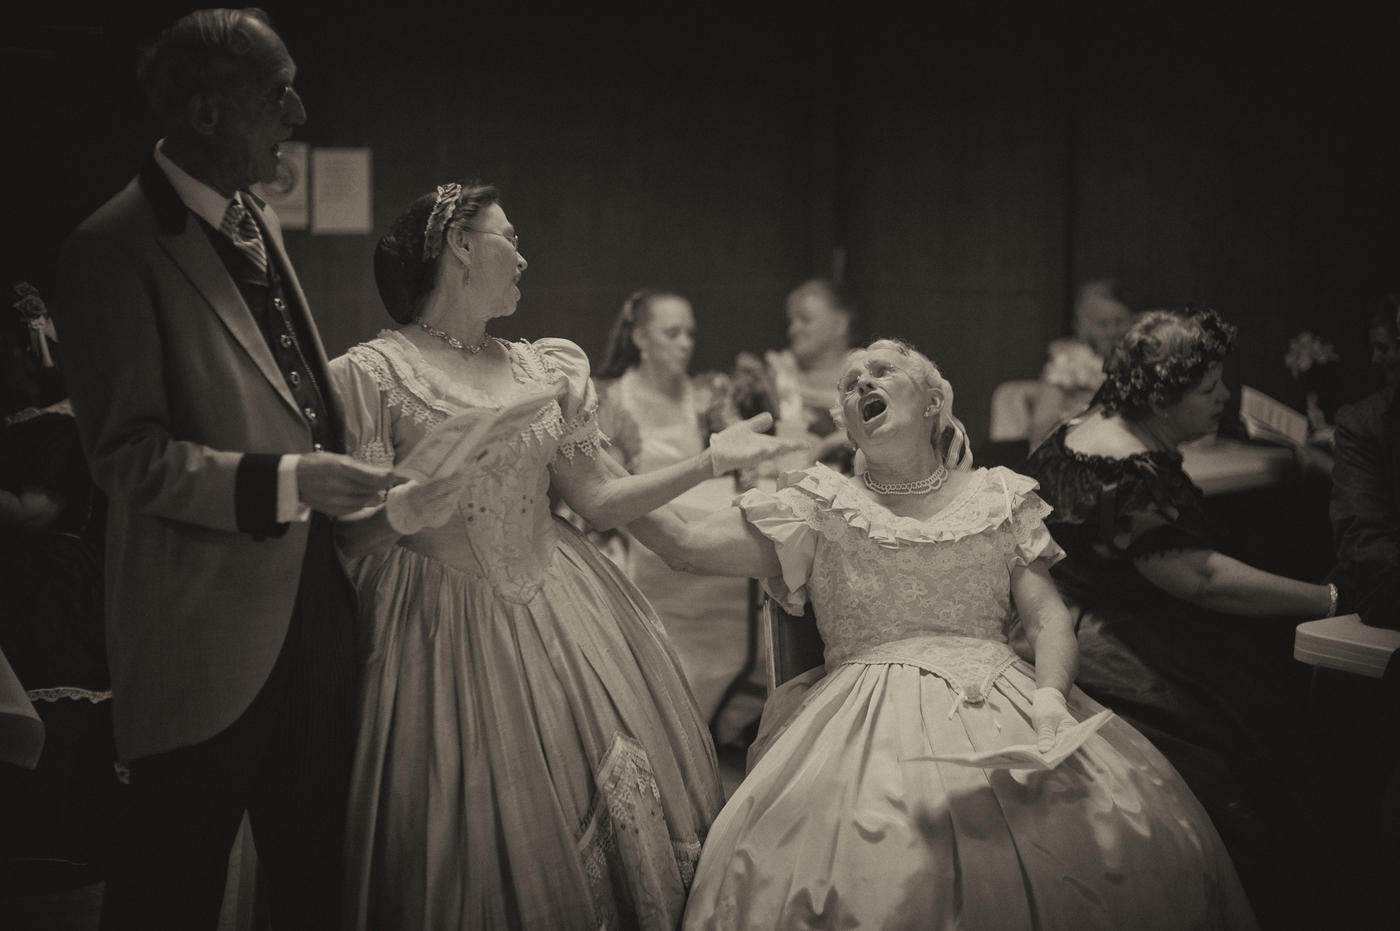 The ladies chorus abides. : The  Lincolns - a Convention : David Burnett | Photographer